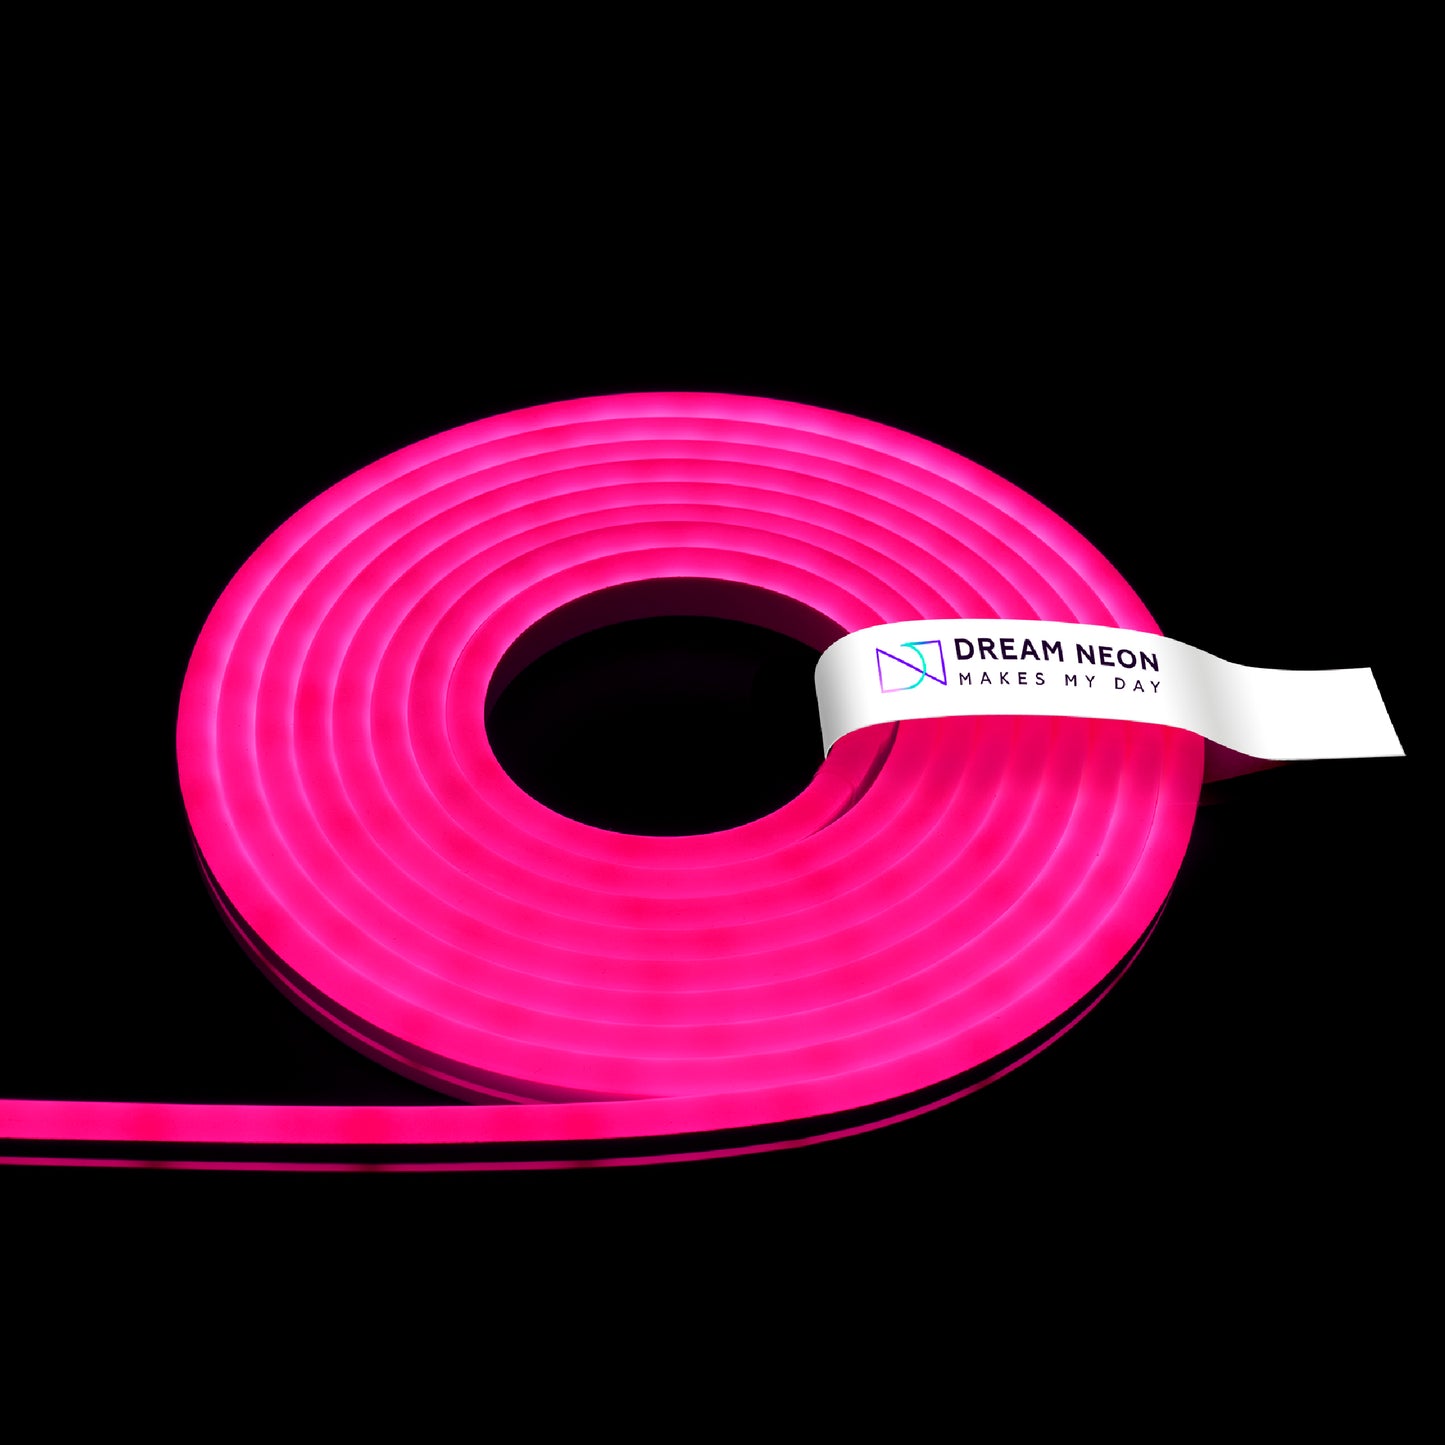 NEON LED - PUNK intense pink